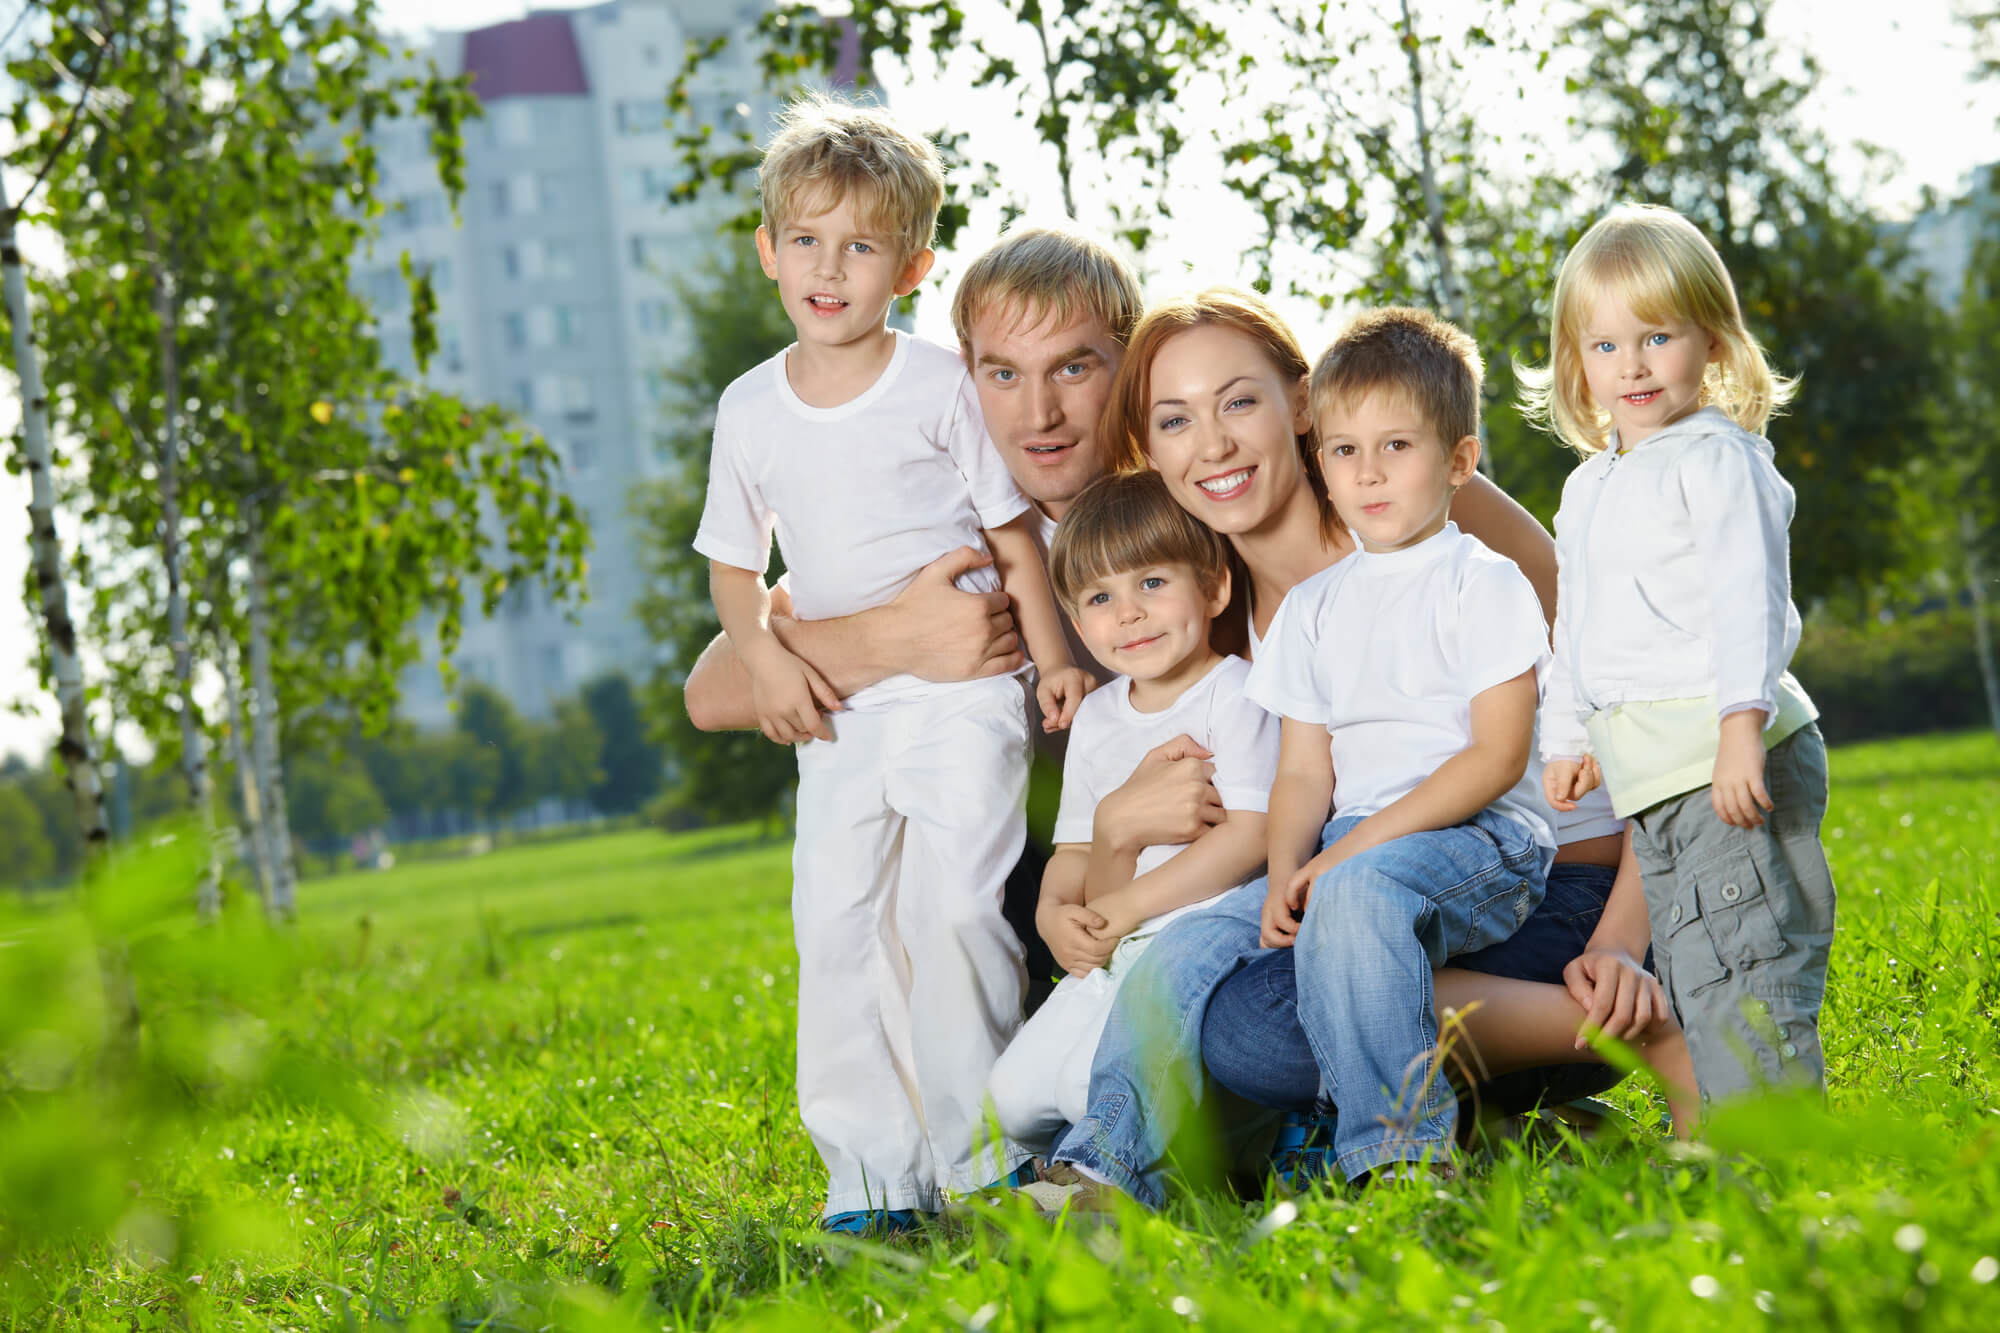 Сайт всей семьей 18 рф. Многодетная семья. Счастливая семья. Фотография семьи. Счастливая многодетная семья.